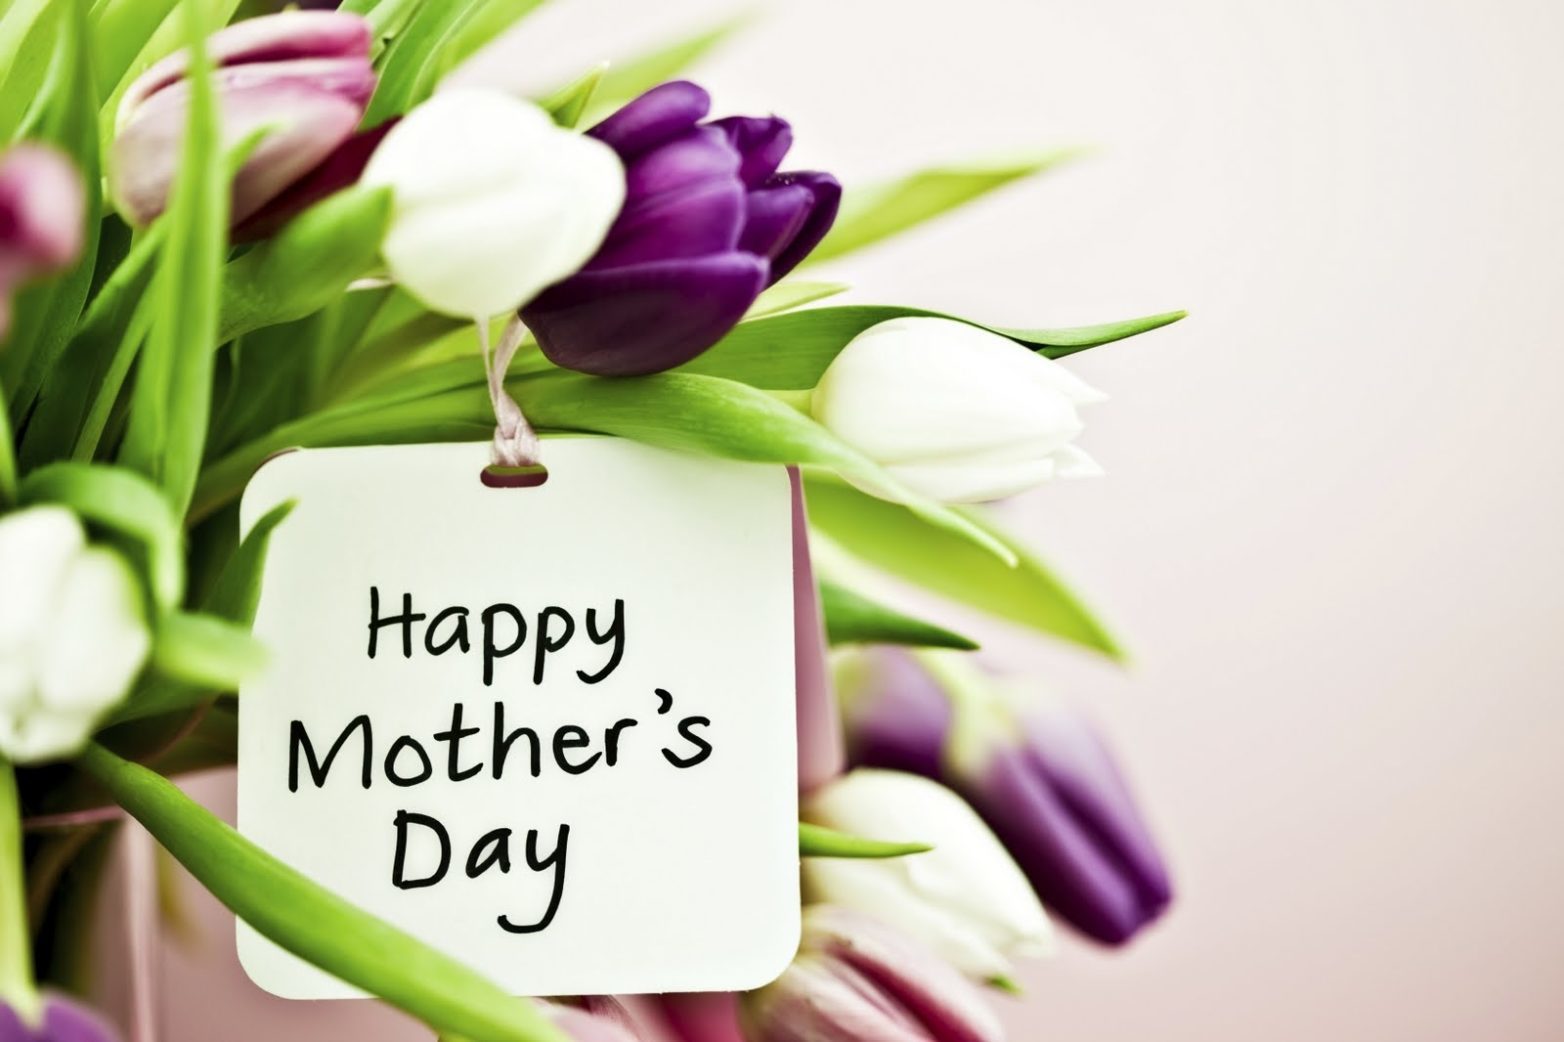 Χρόνια Πολλά Μαμά! Ευχές- Γιορτή Μητέρας 2020: Εορτολόγιο ποιοι γιορτάζουν σήμερα